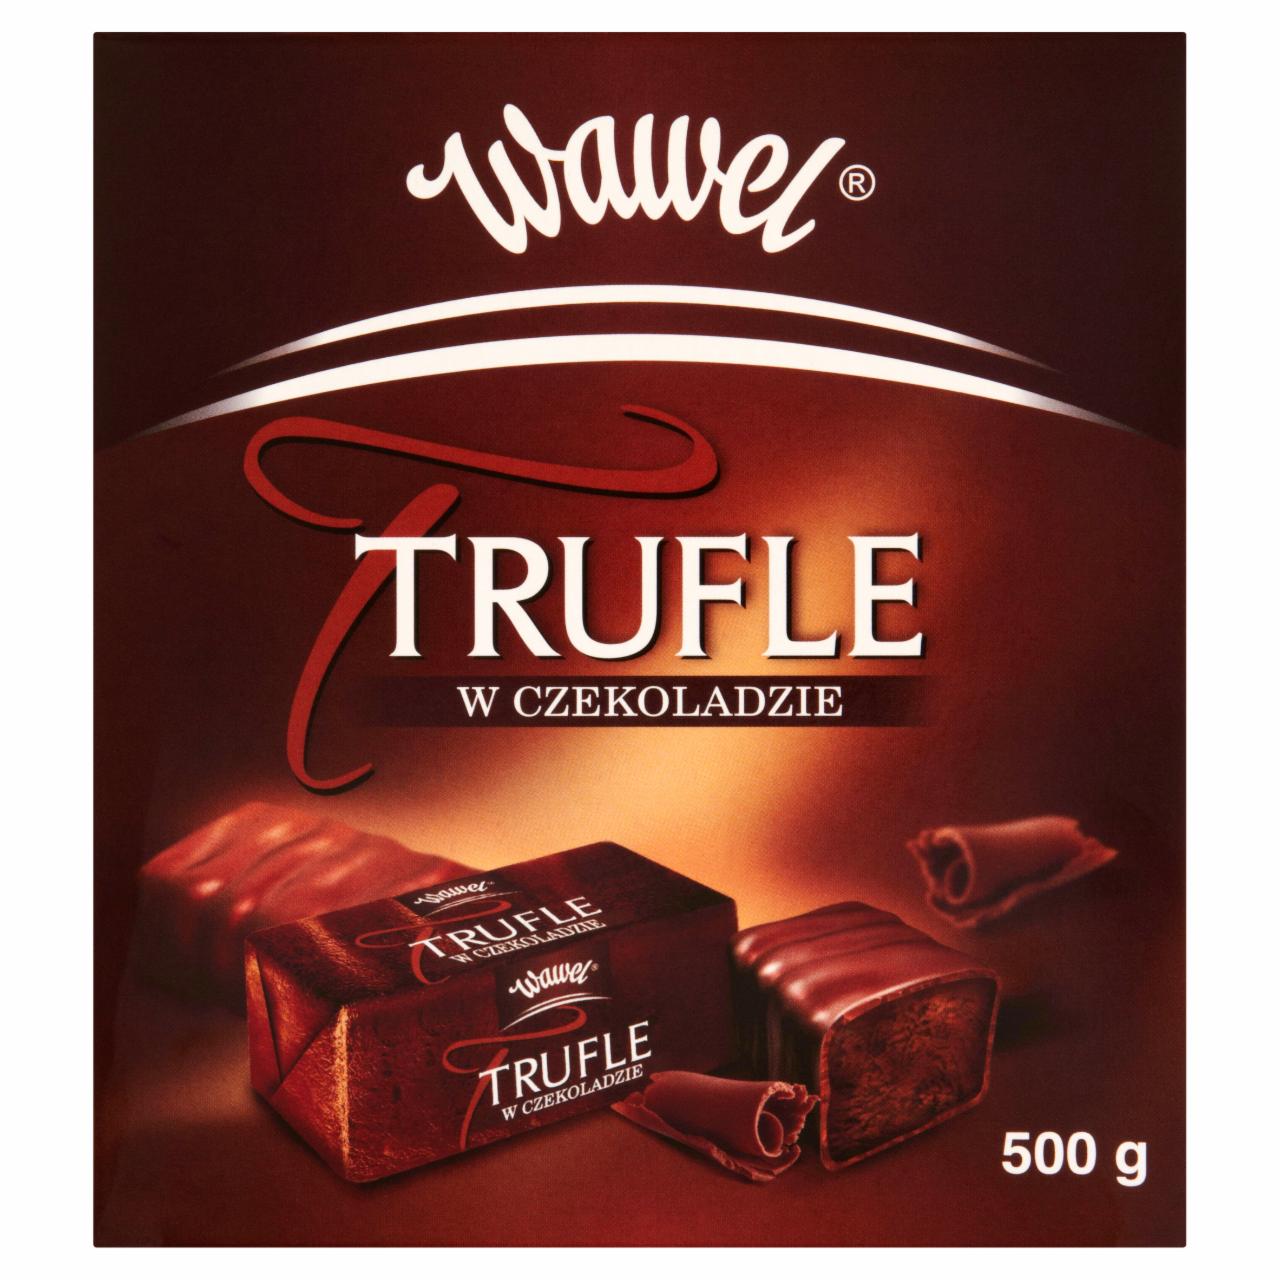 Zdjęcia - Wawel Trufle w czekoladzie Cukierki o smaku rumowym 500 g